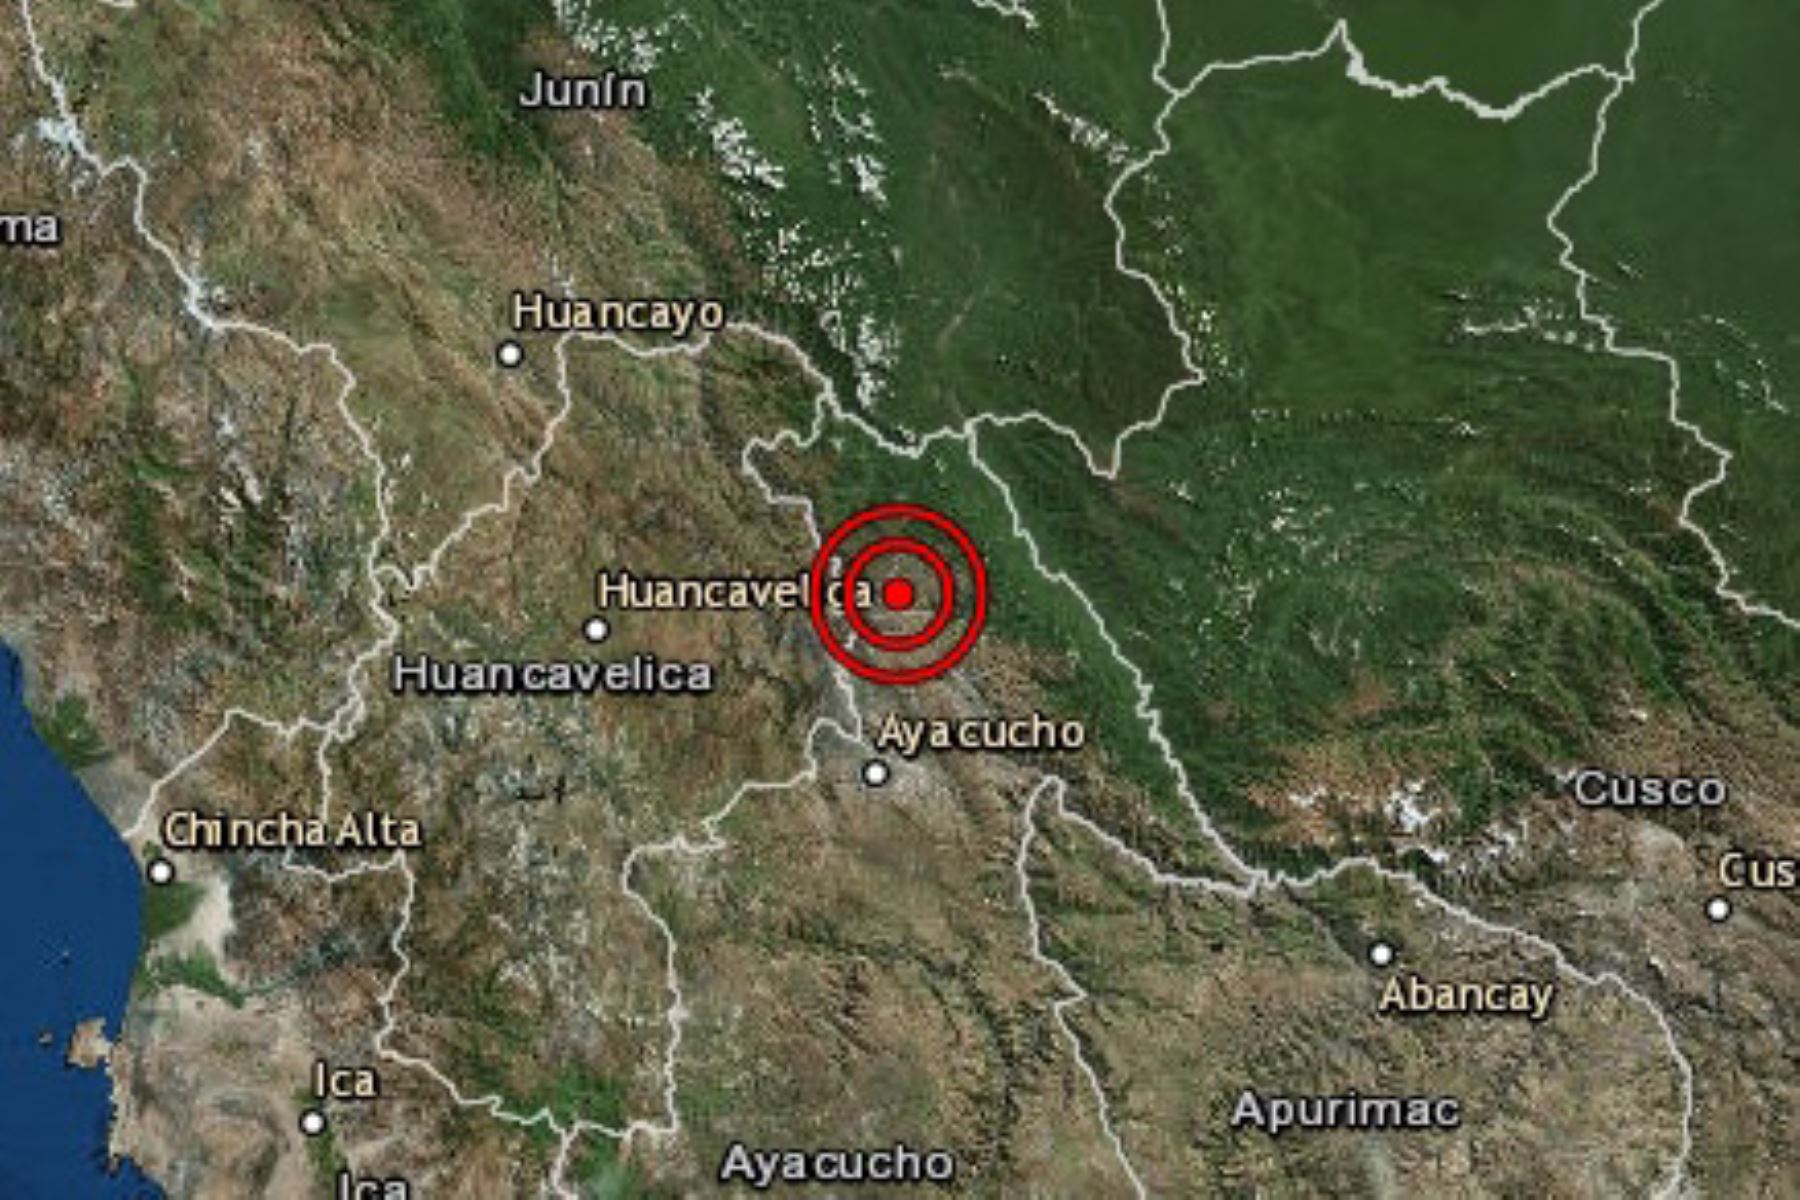 Movimiento telúrico de magnitud 3.7, con epicentro a 25 kilómetros al este de Churcampa, una de las siete provincias de la región Huancavelica.